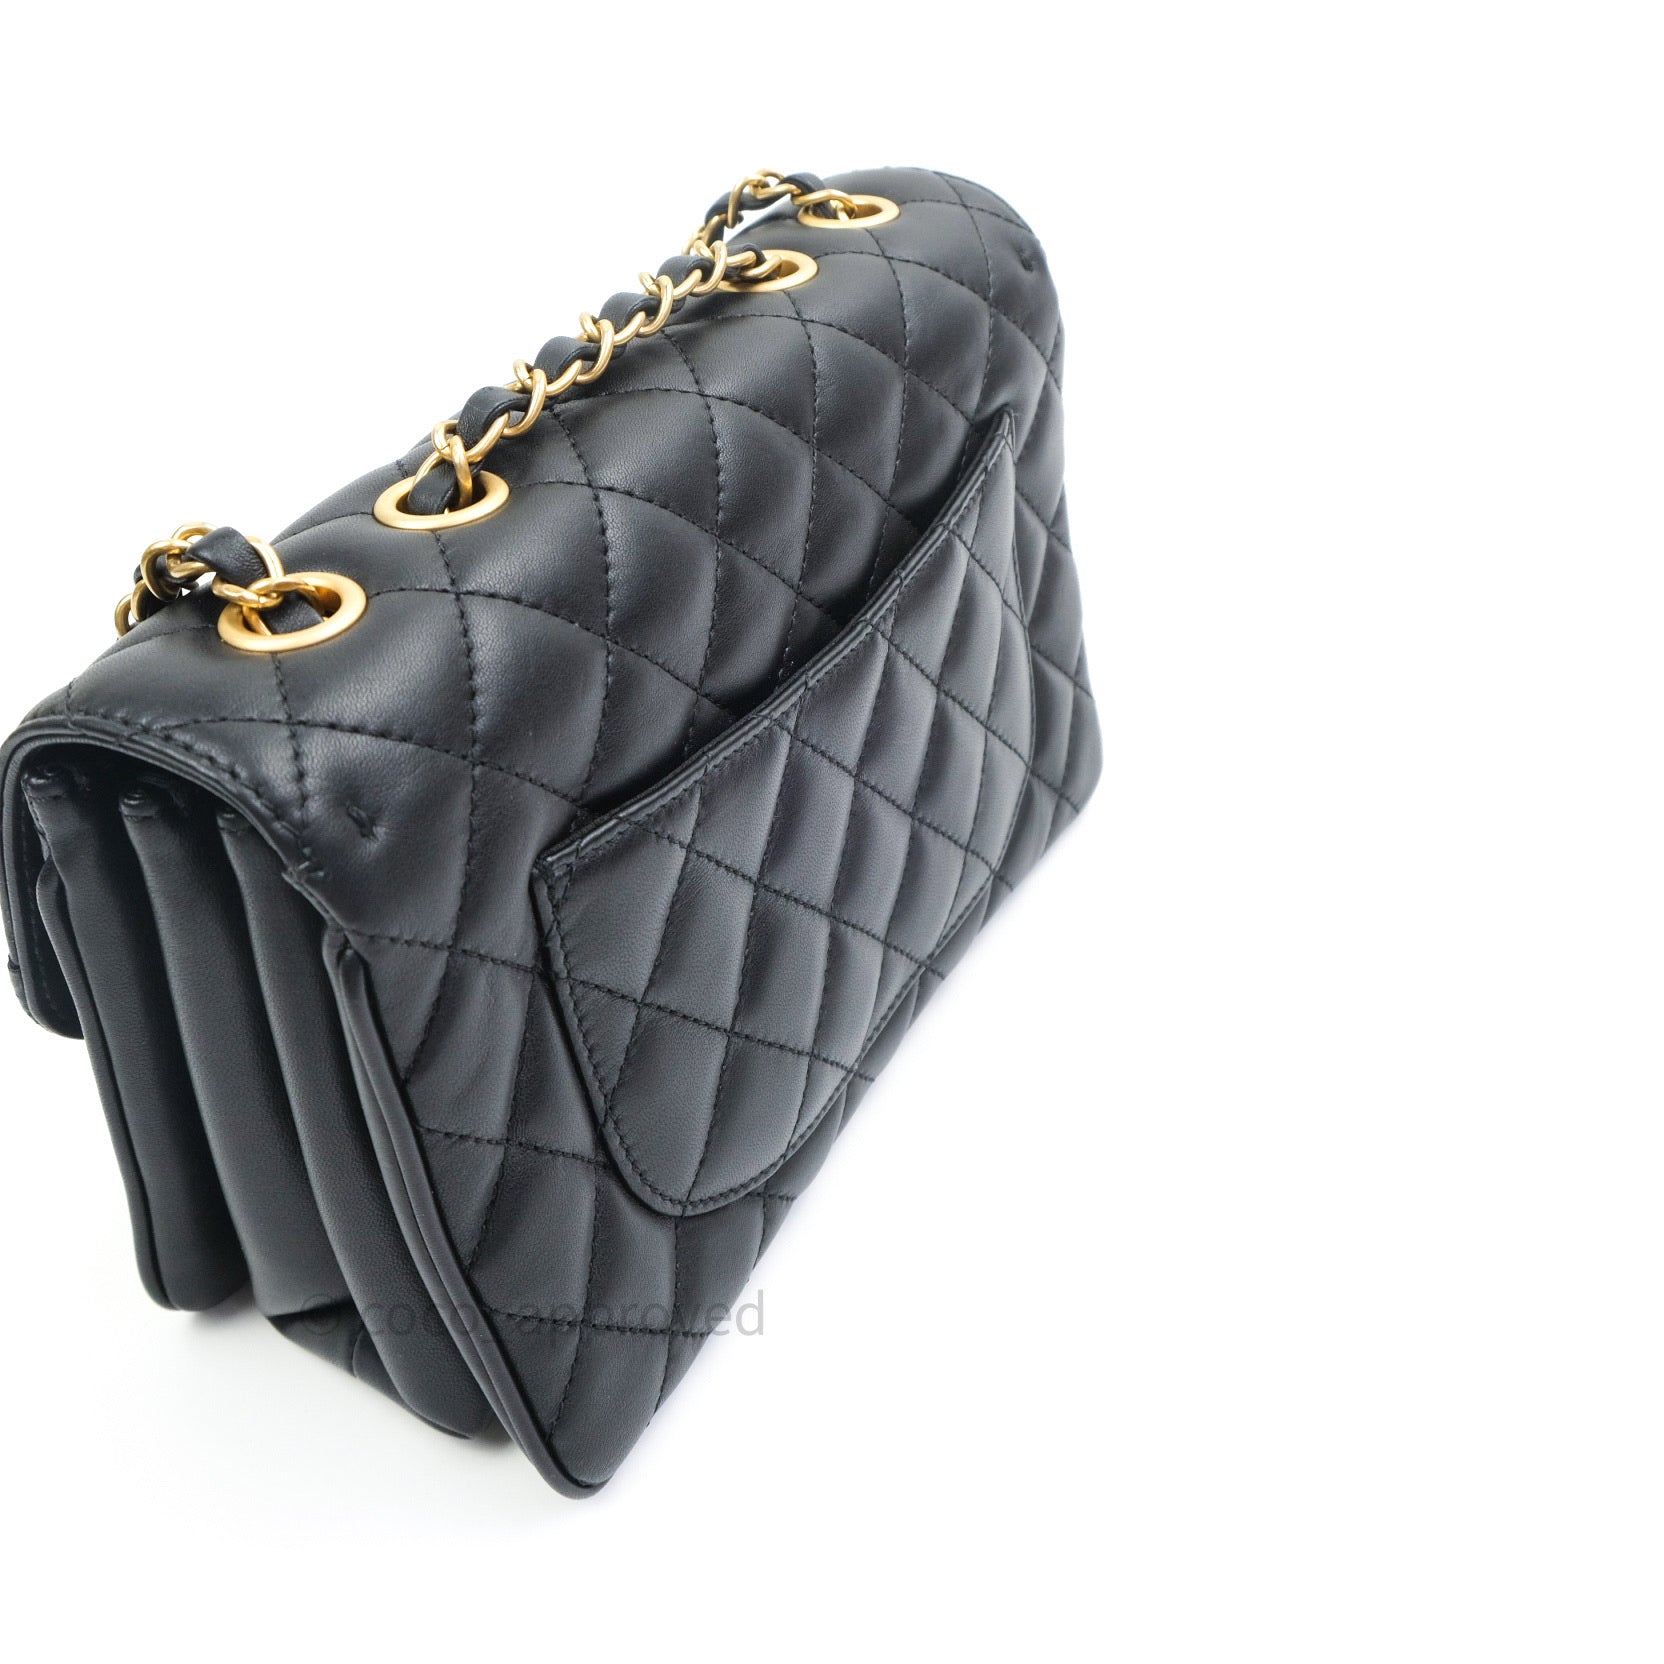 Chanel Métiers d'Art 2019 Flap Bag - BAGAHOLICBOY